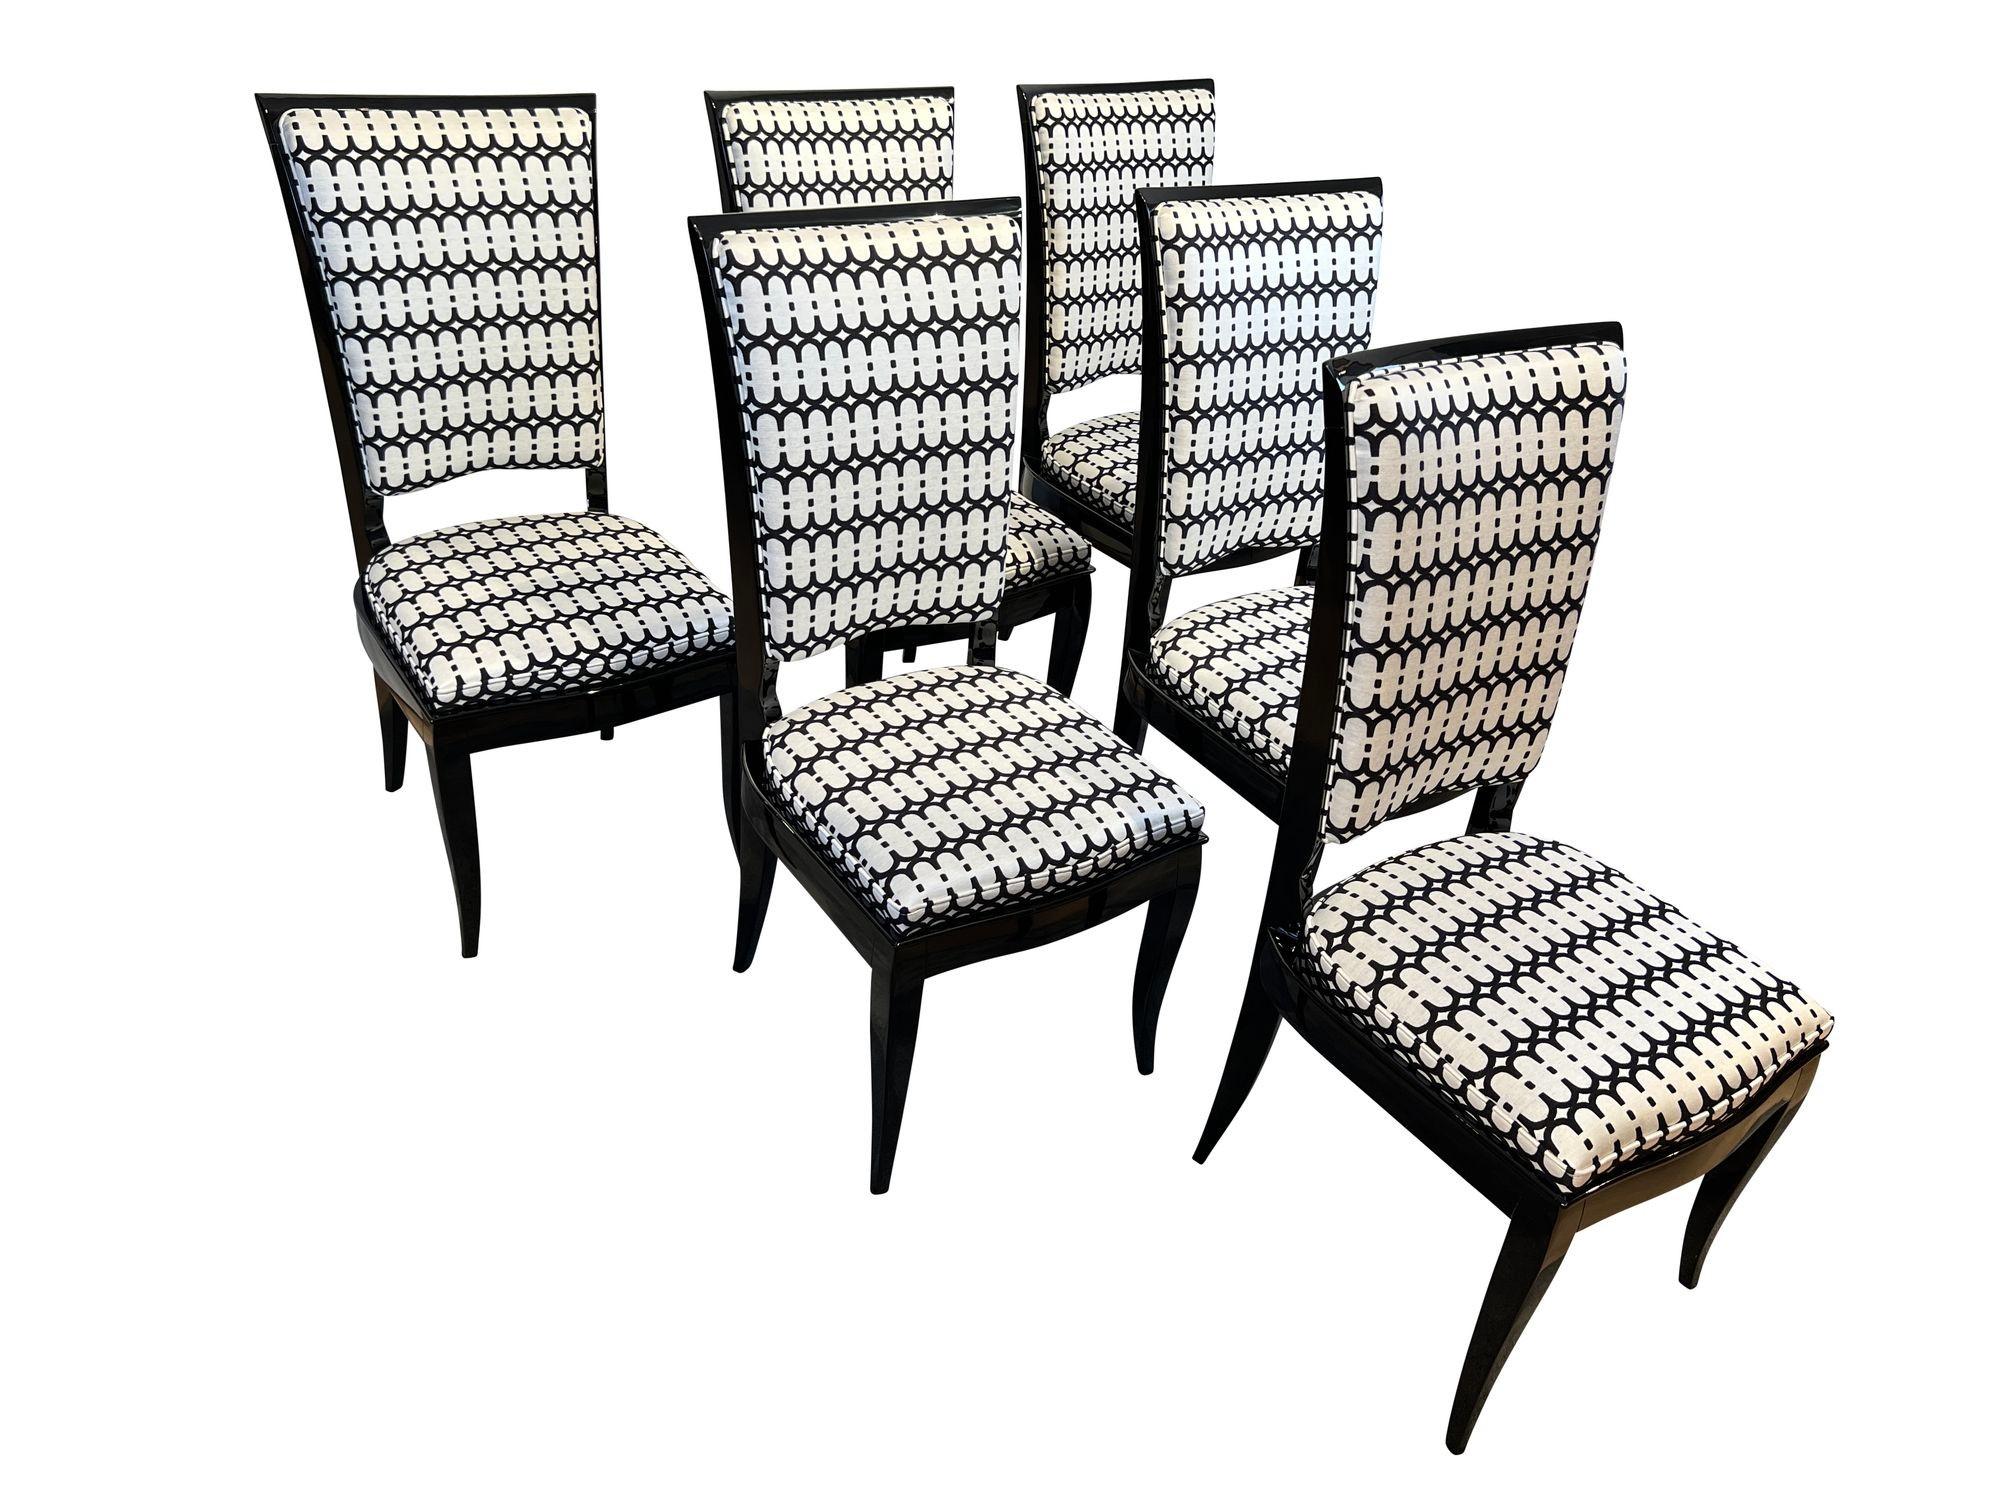 Satz von sechs Art Déco Stühlen mit hoher Rückenlehne, schwarz lackiert, Frankreich um 1930

Schöner Satz von 6 Art Deco Stühlen, vollständig restauriert, aus Frankreich um 1930.
Massivholz aus Buche. Schwarzer Hochglanz-Klavierlack. Neu gepolstert